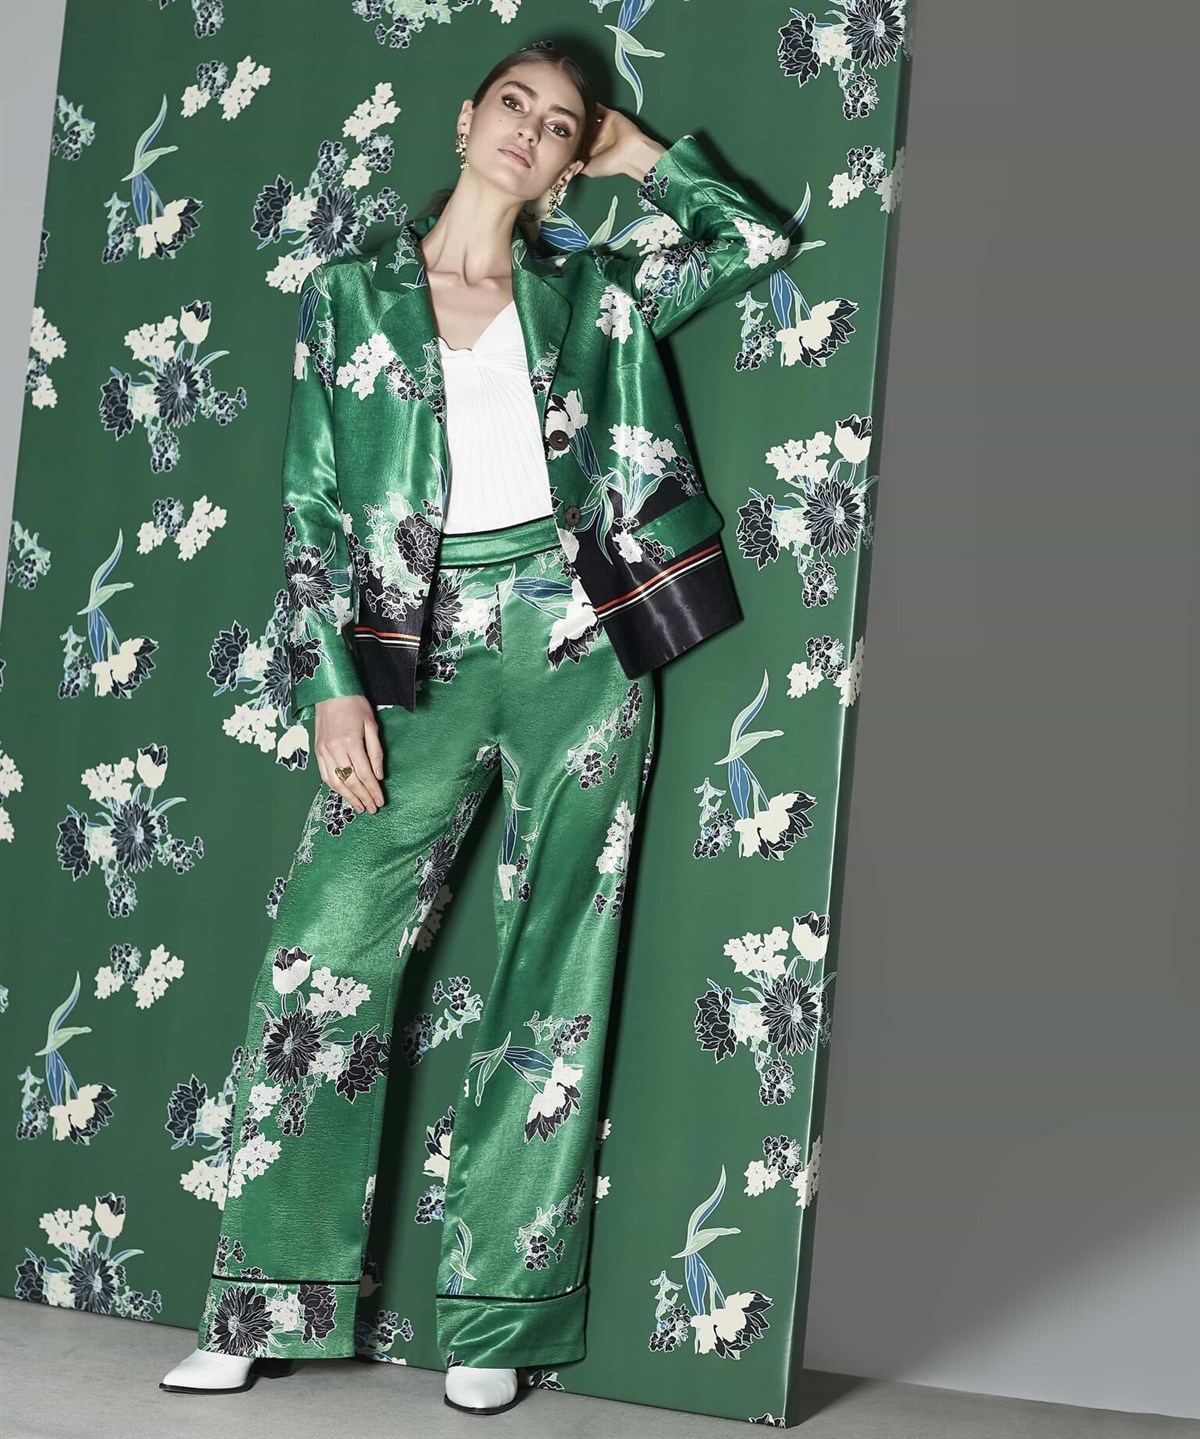 İPEKYOL Yüksek Bel Biye Geçişli Çiçek Desenli Yeşil Pantolon